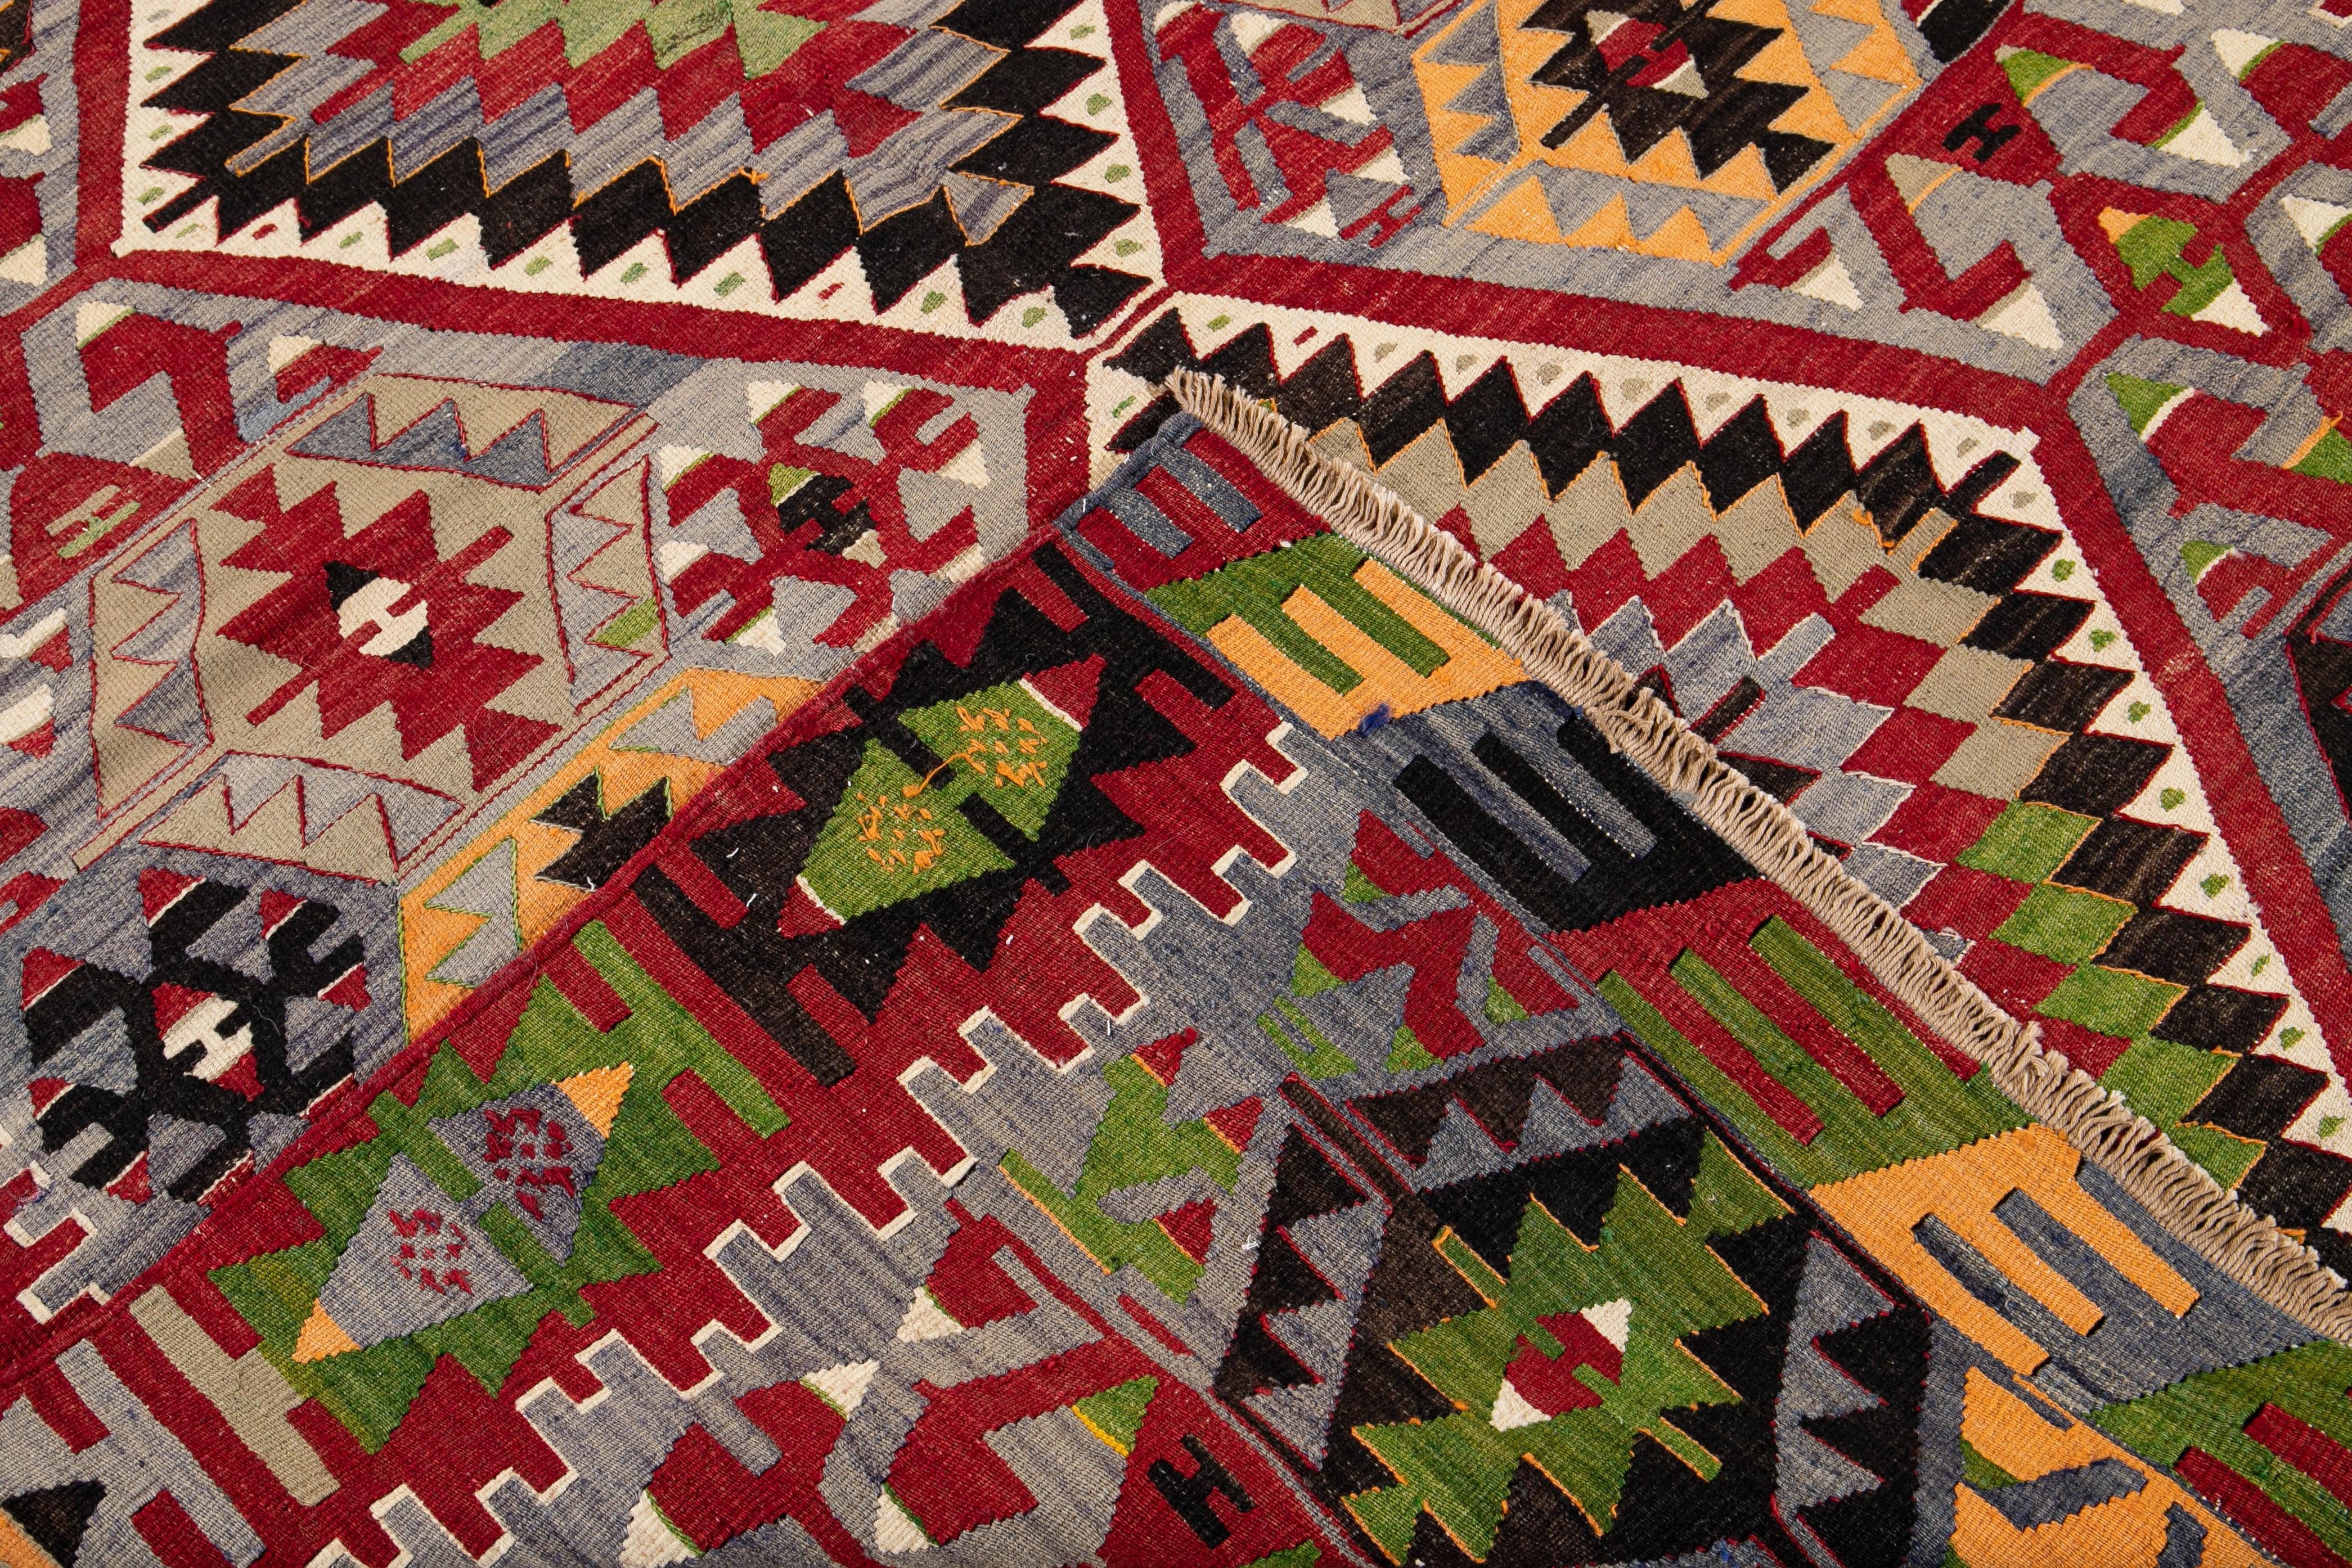 Hand-Knotted Mid-20th Century Vintage Multicolored Geometric Turkish Kilim Wool Rug